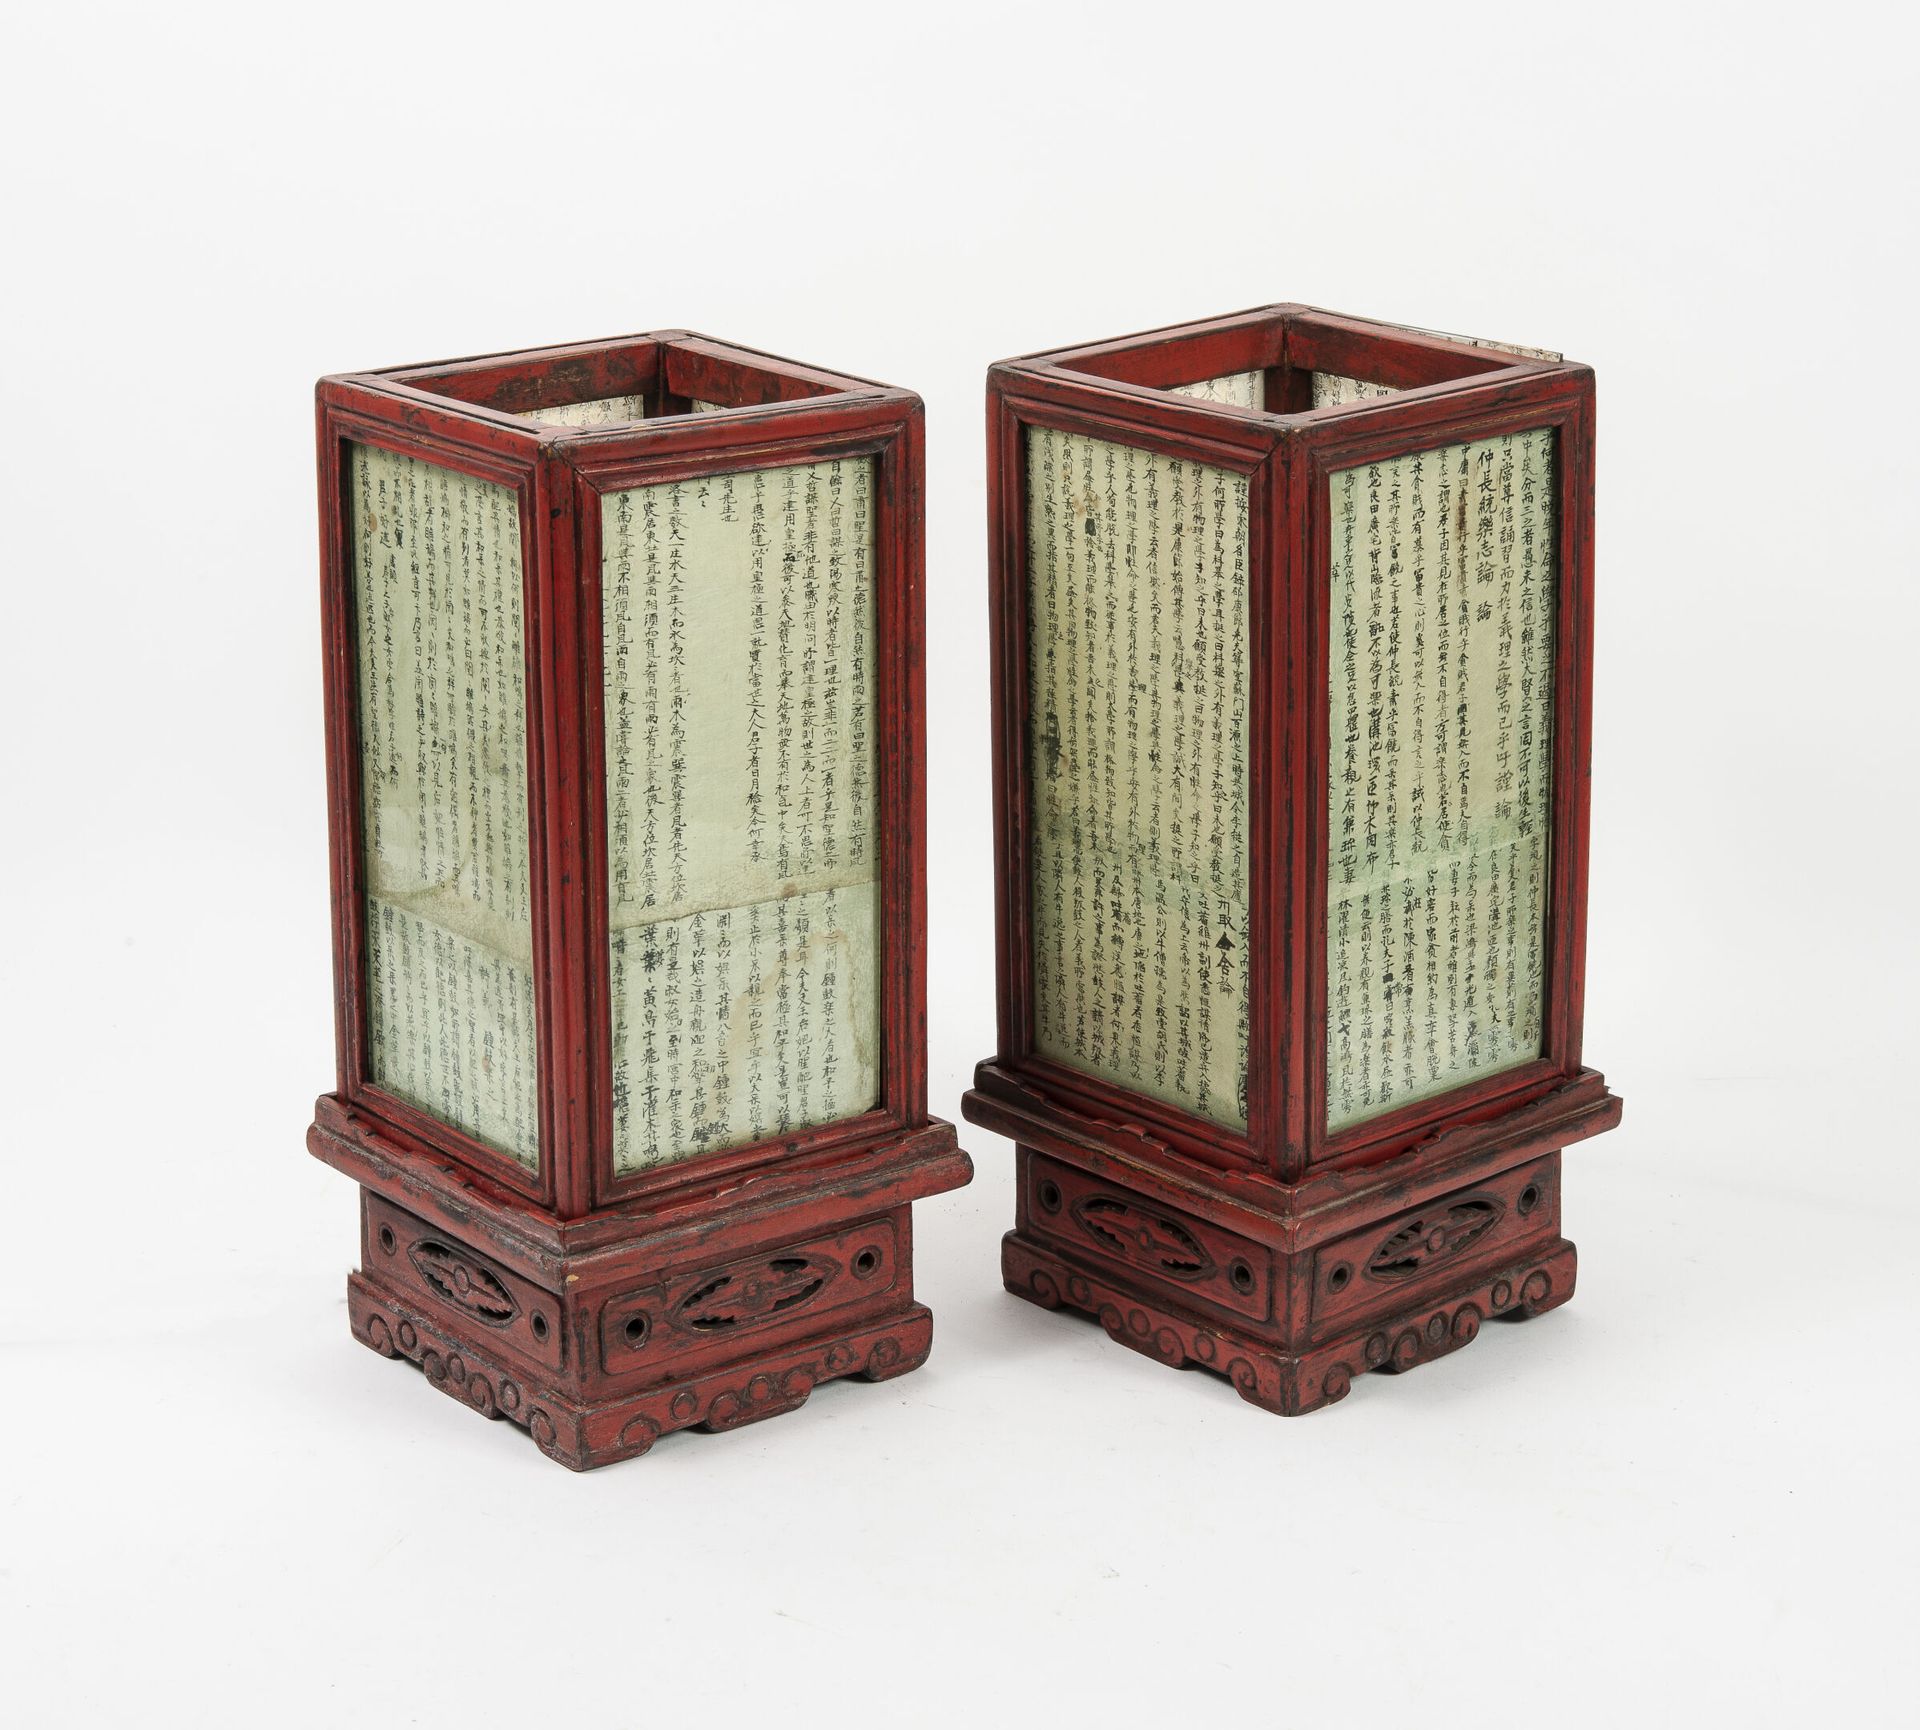 CHINE, XXème siècle 一对小型方形截面灯笼，模制和雕刻的木头，红漆和纸上书法。

磨损的